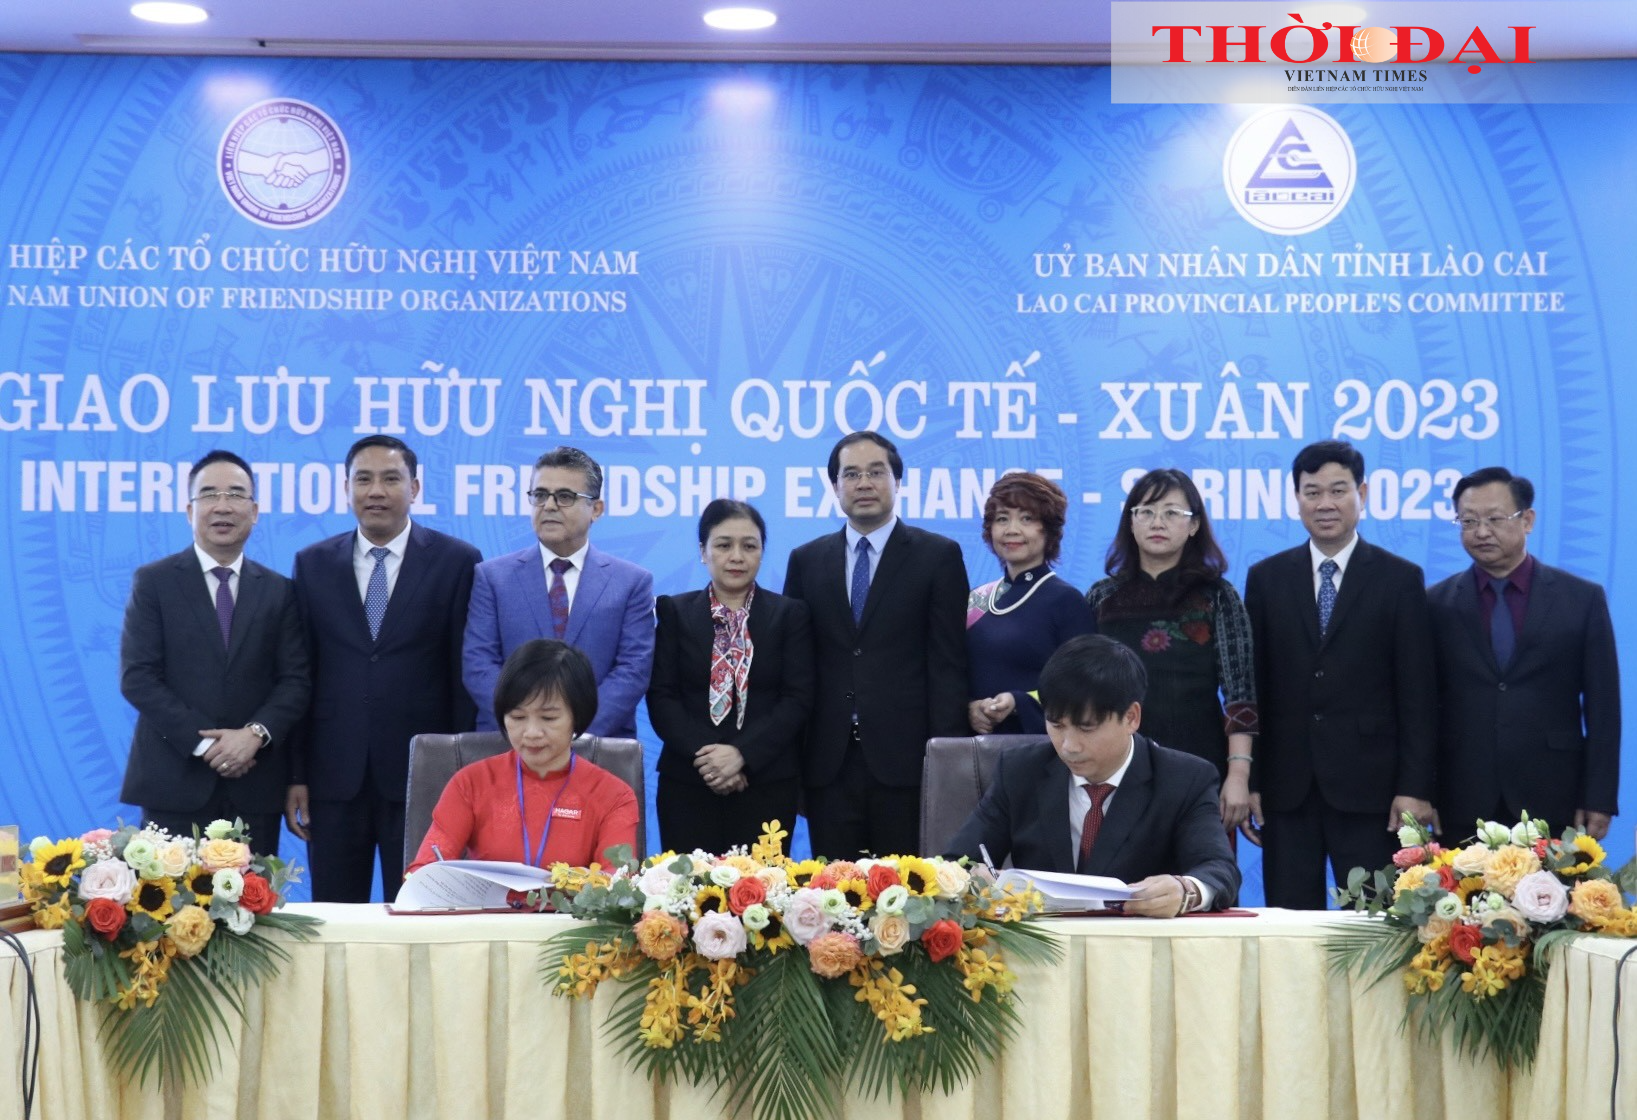 Liên hiệp các tổ chức hữu nghị tỉnh Lào Cai: Nhiều đóng góp tích cực cho công tác đối ngoại nhân dân